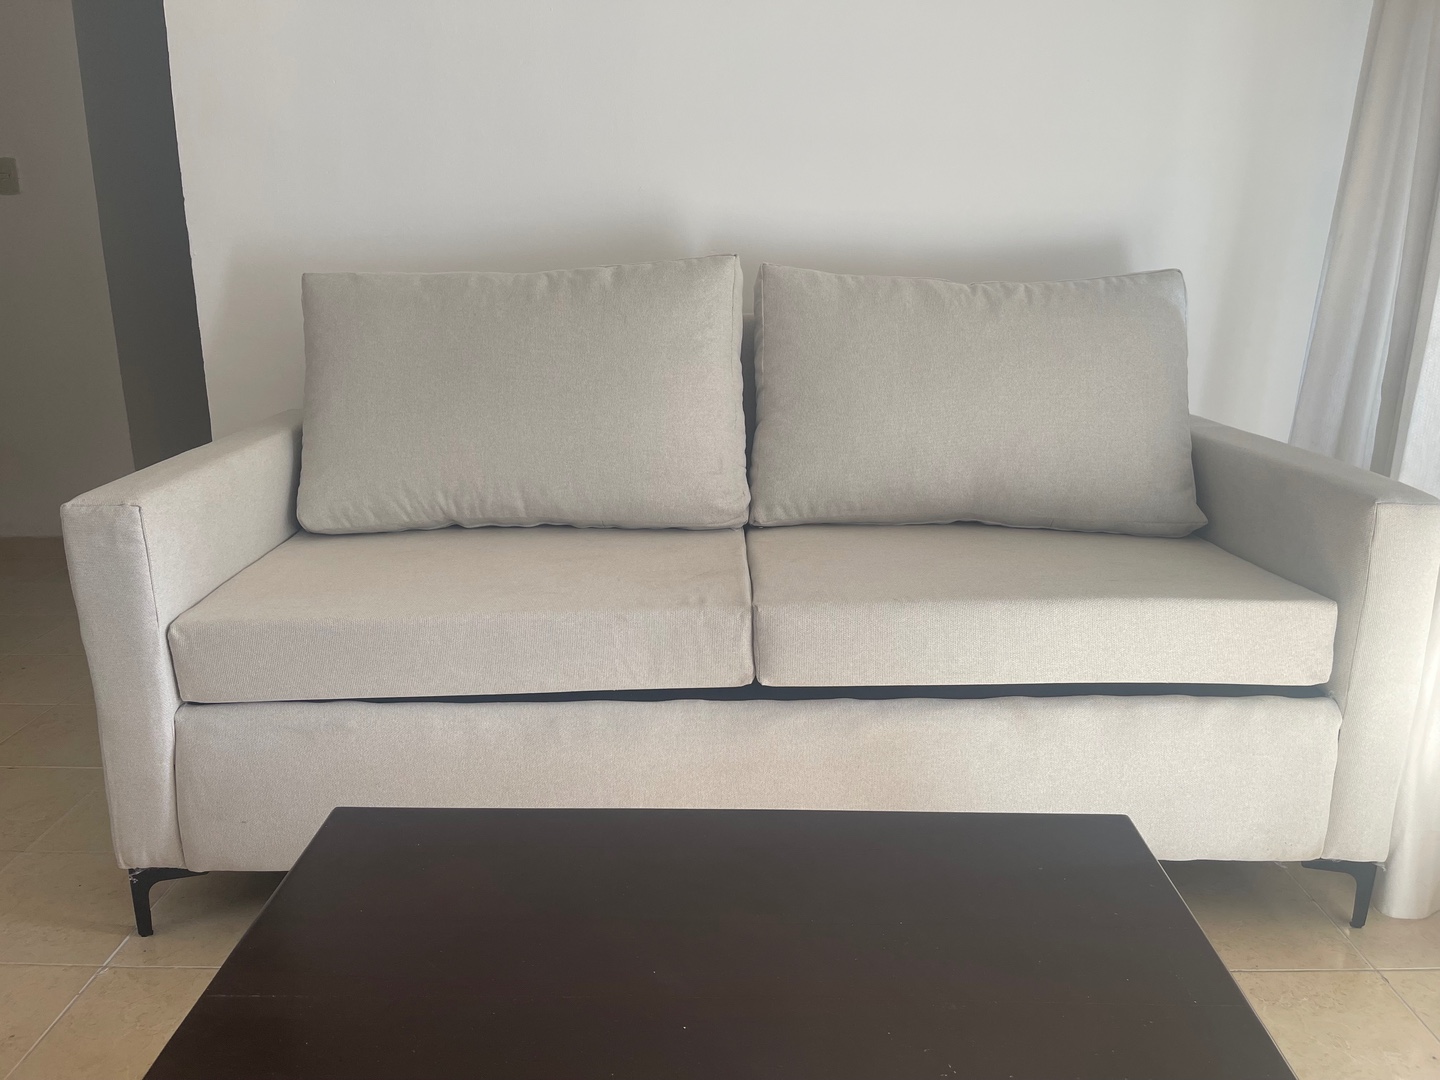 muebles y colchones - Juego de muebles recién tapizados color beige RD$30,000 0